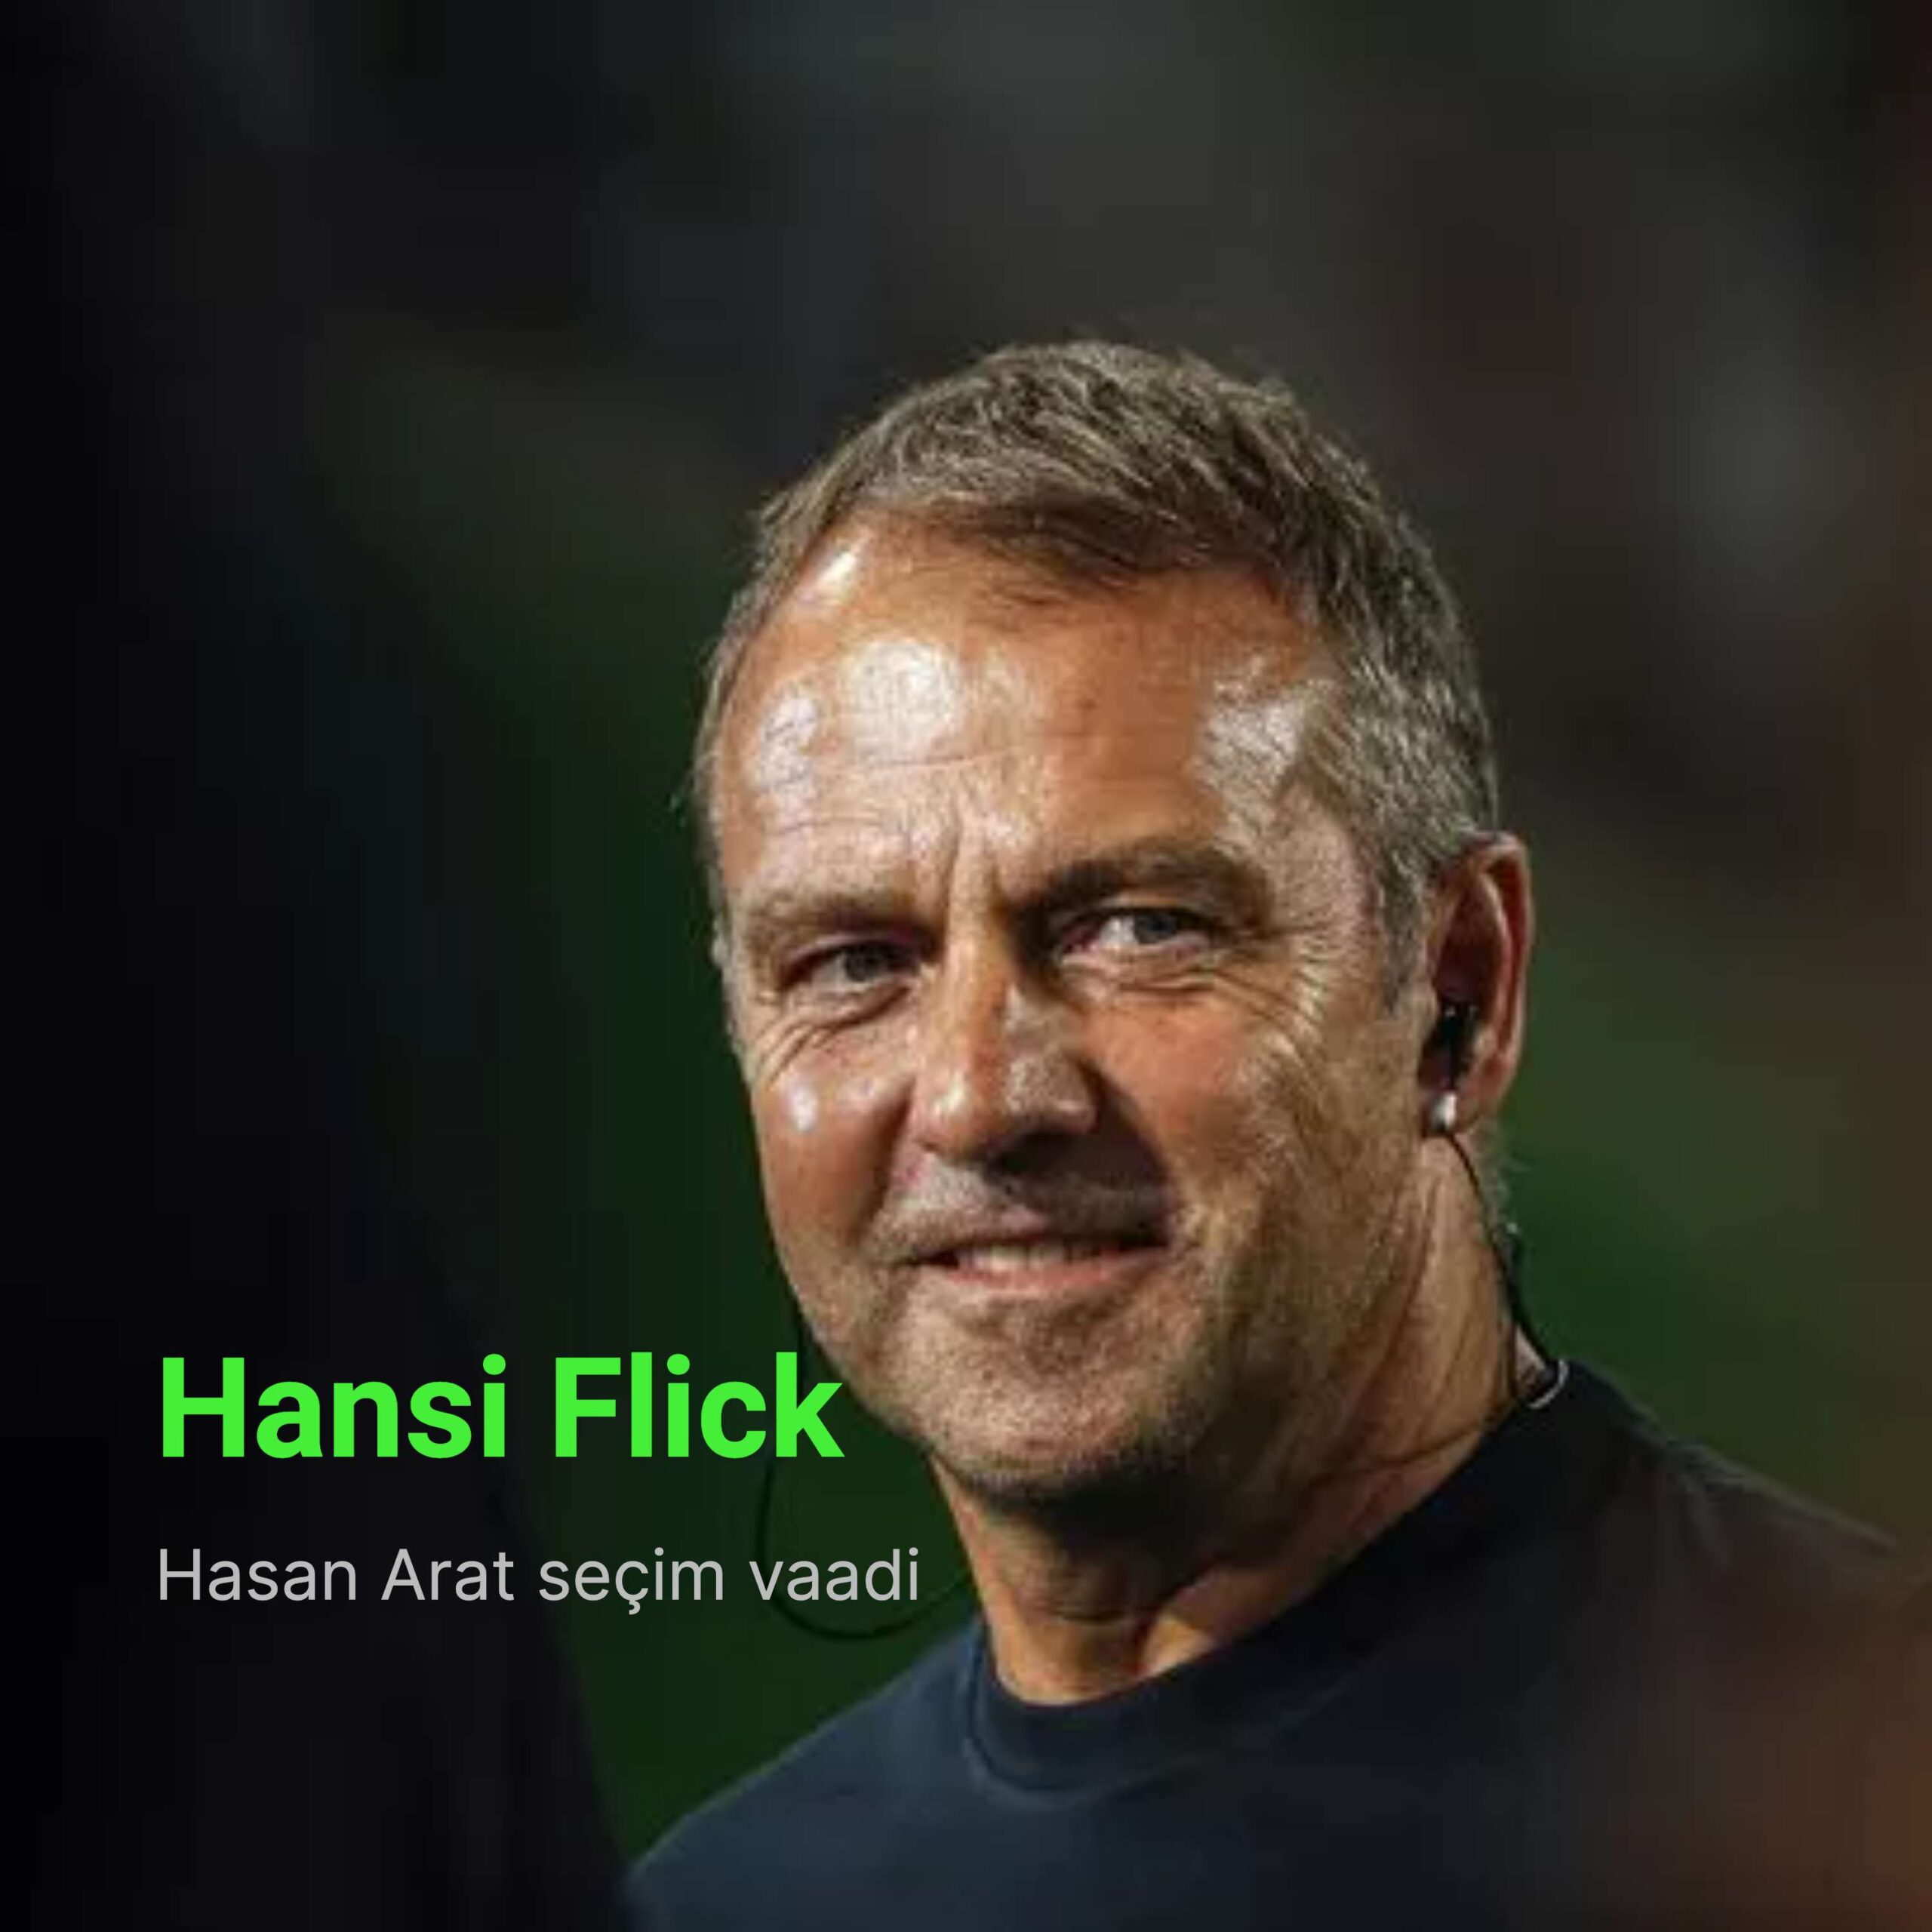 Hasan Arat, Bayern Münih ve Almanya Milli Takımı’nın eski teknik direktörü Hansi Flick’le görüştüğünü Hansi Flick’in Ocak'ta Beşiktaş'a geleceğini söylemişti.